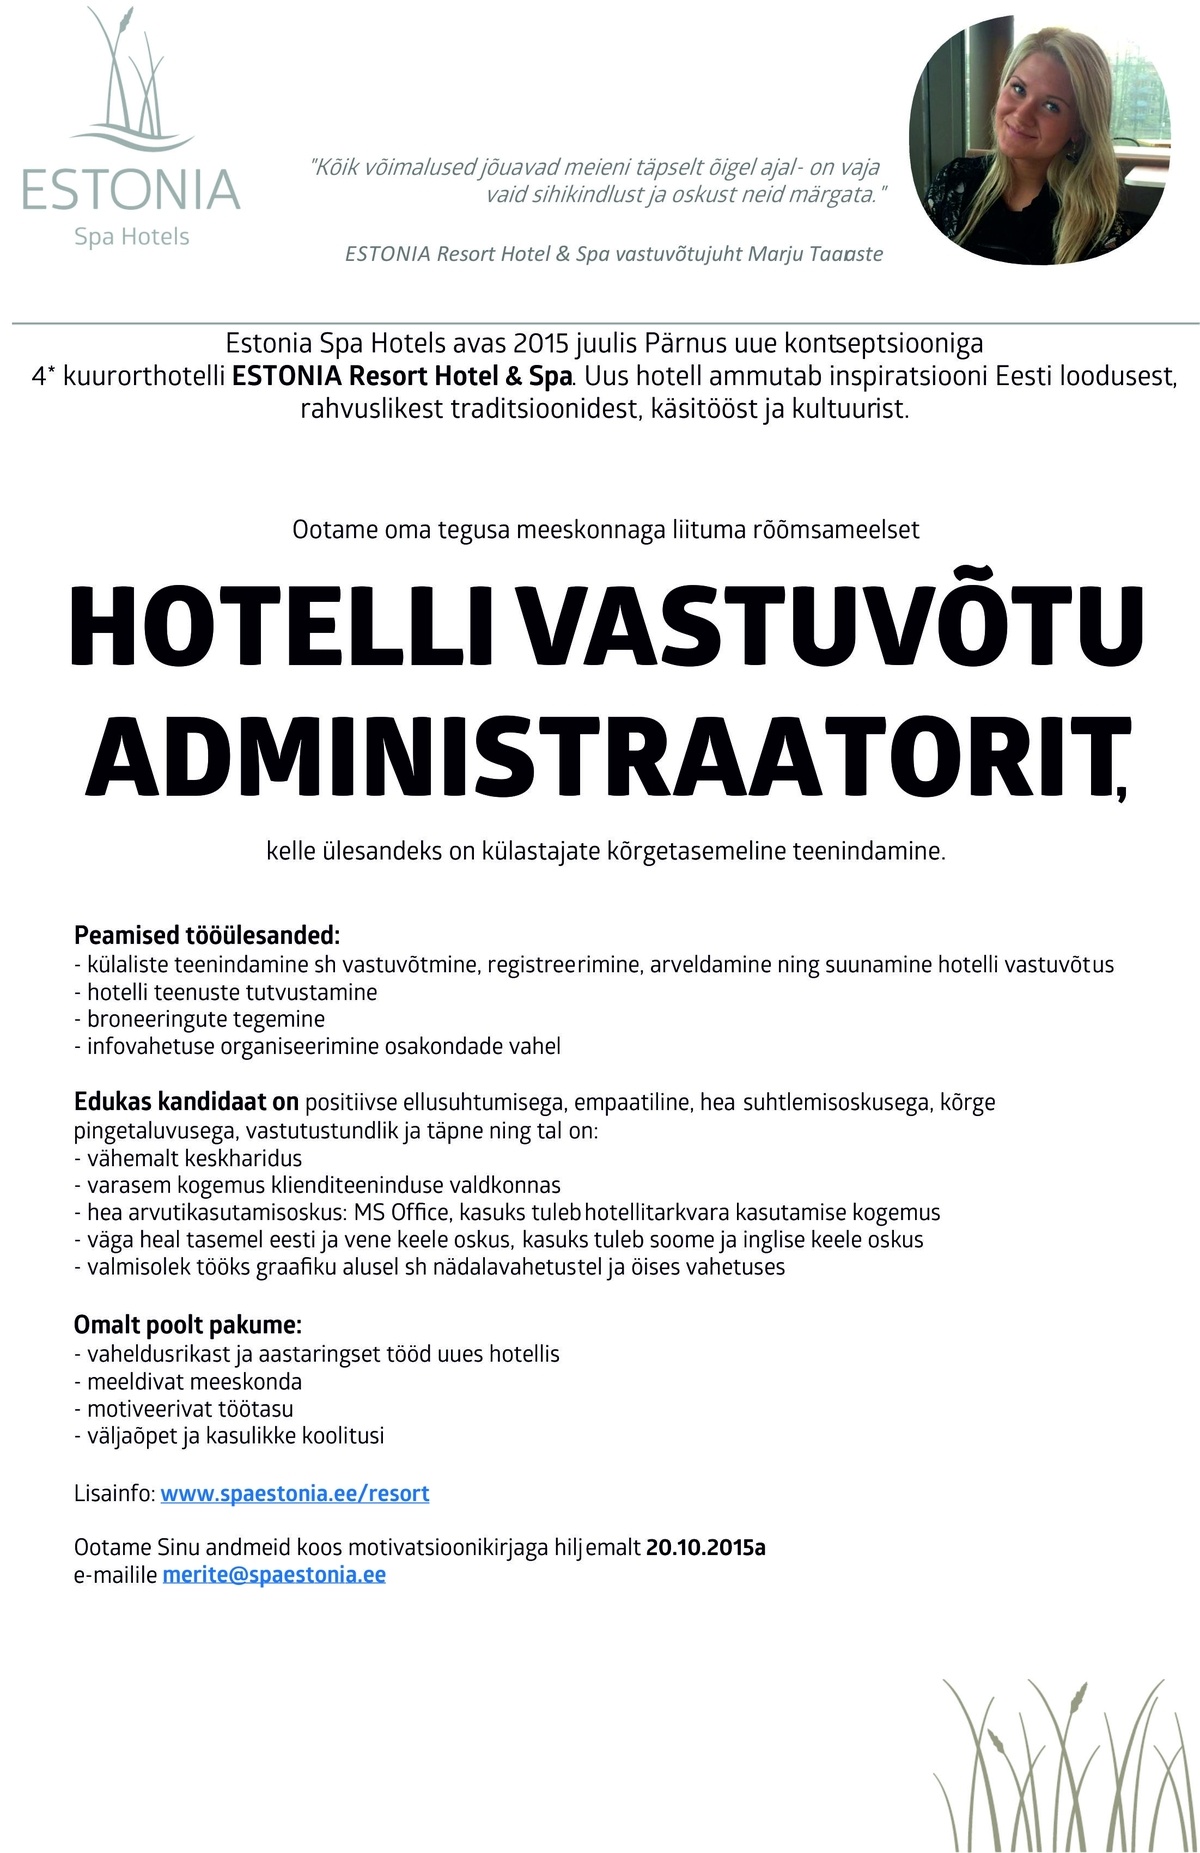 Estonia Spa Hotels AS Hotelli vastuvõtu administraator